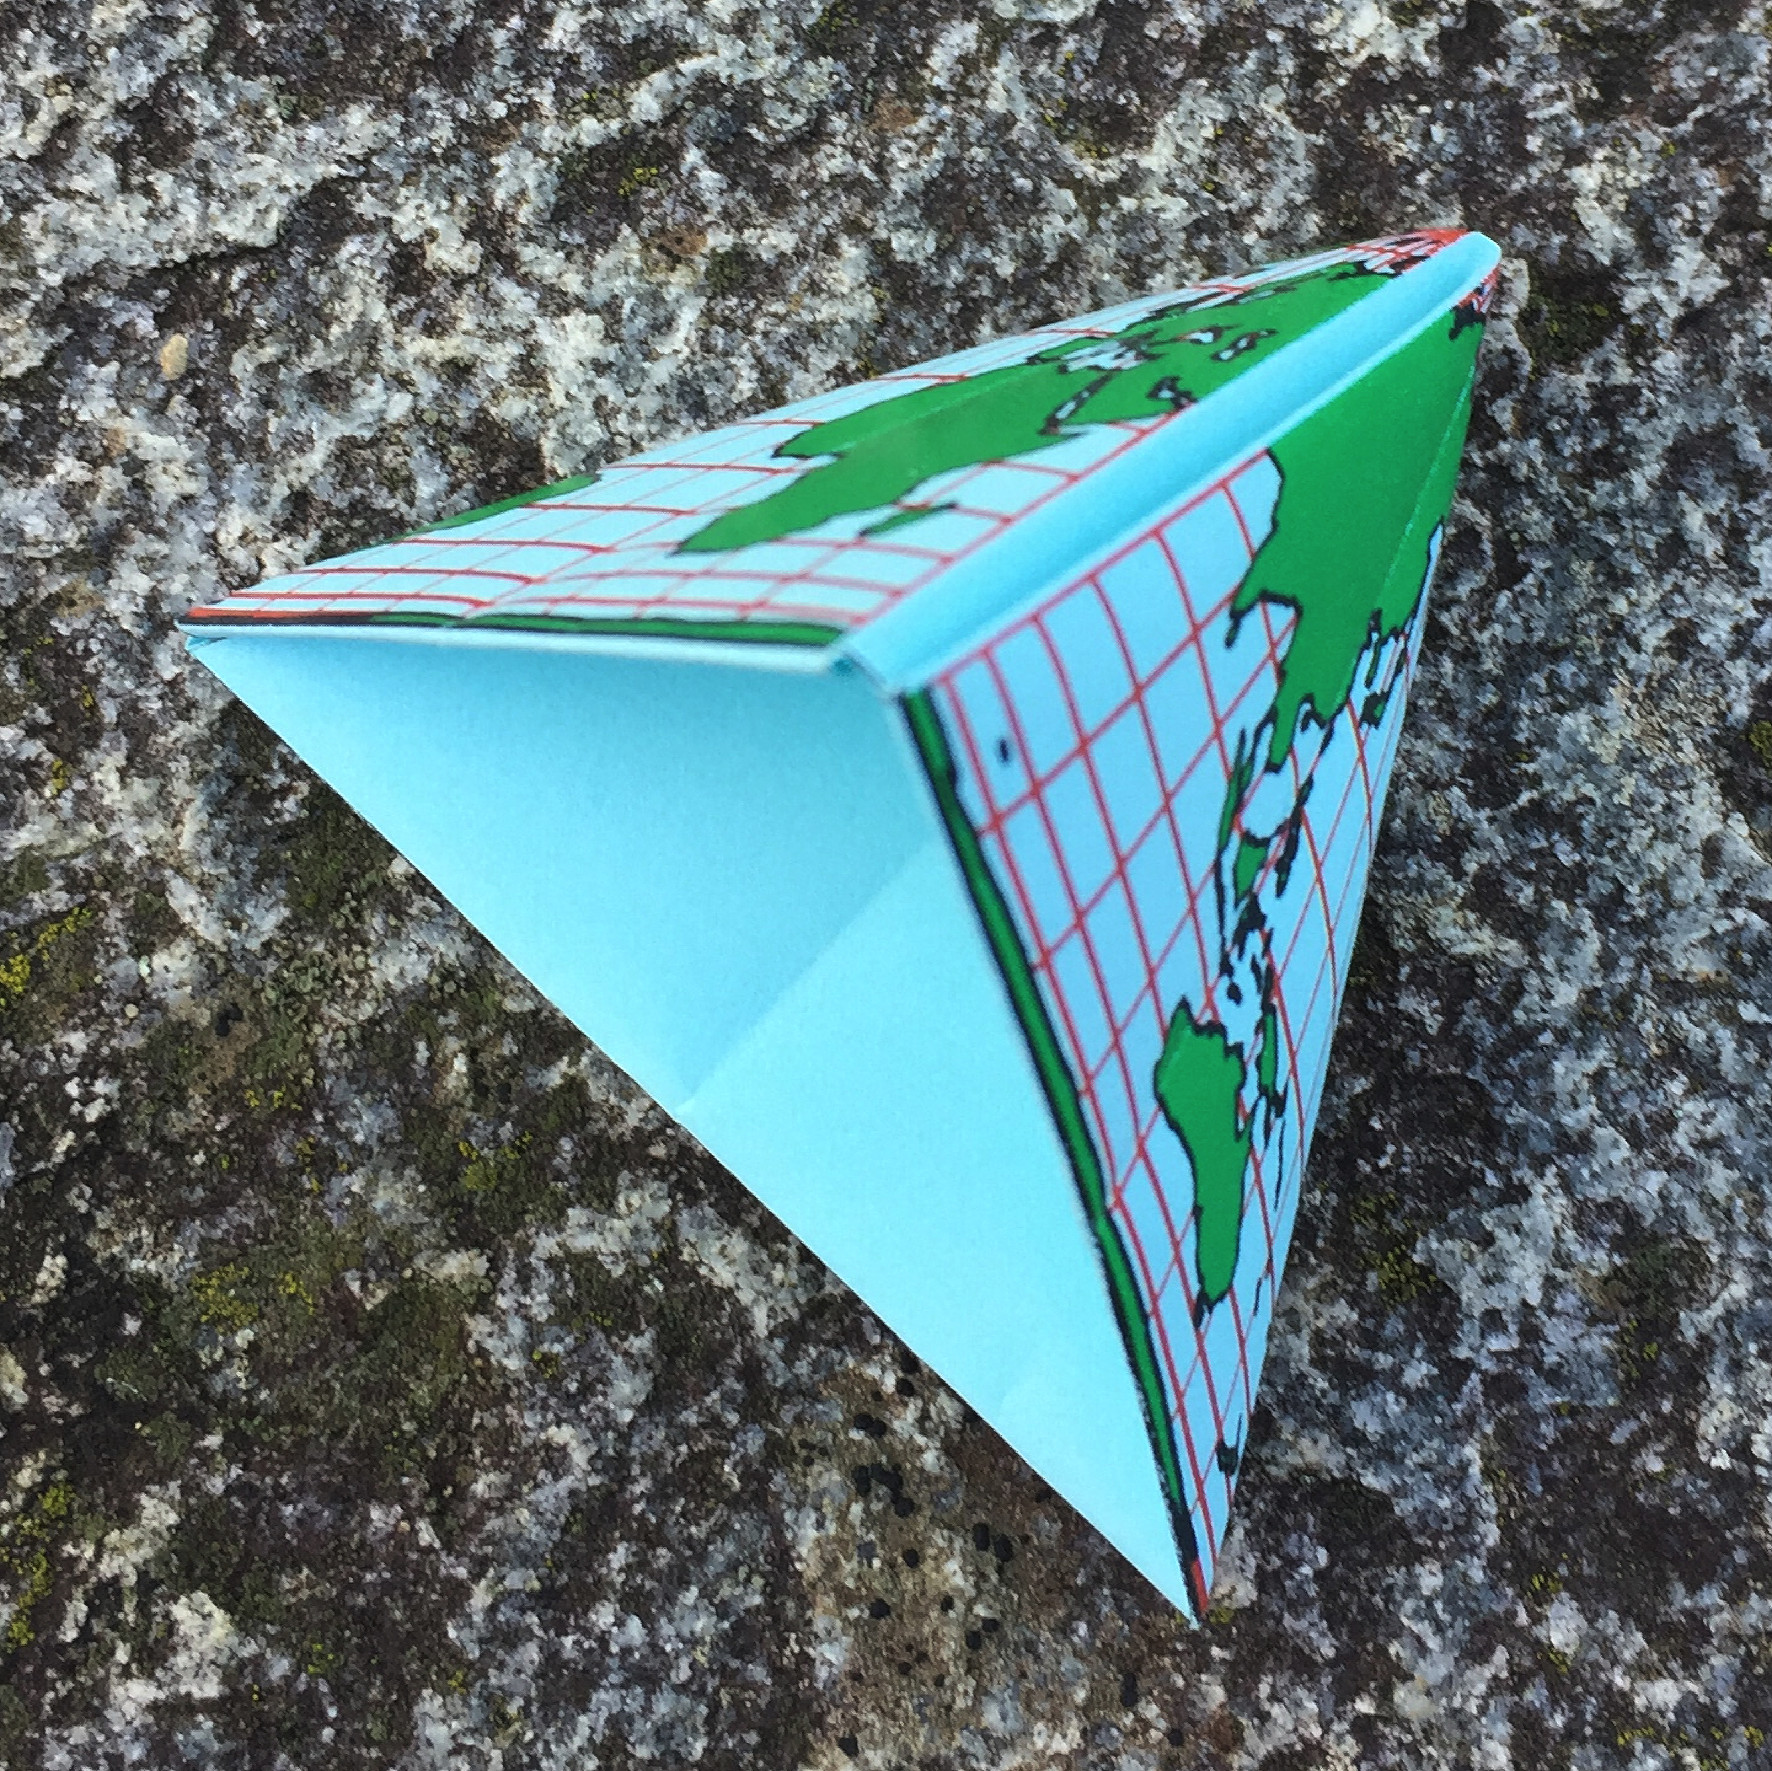 Ein Bild, das Dreieck, Gelände enthält.

Automatisch generierte Beschreibung